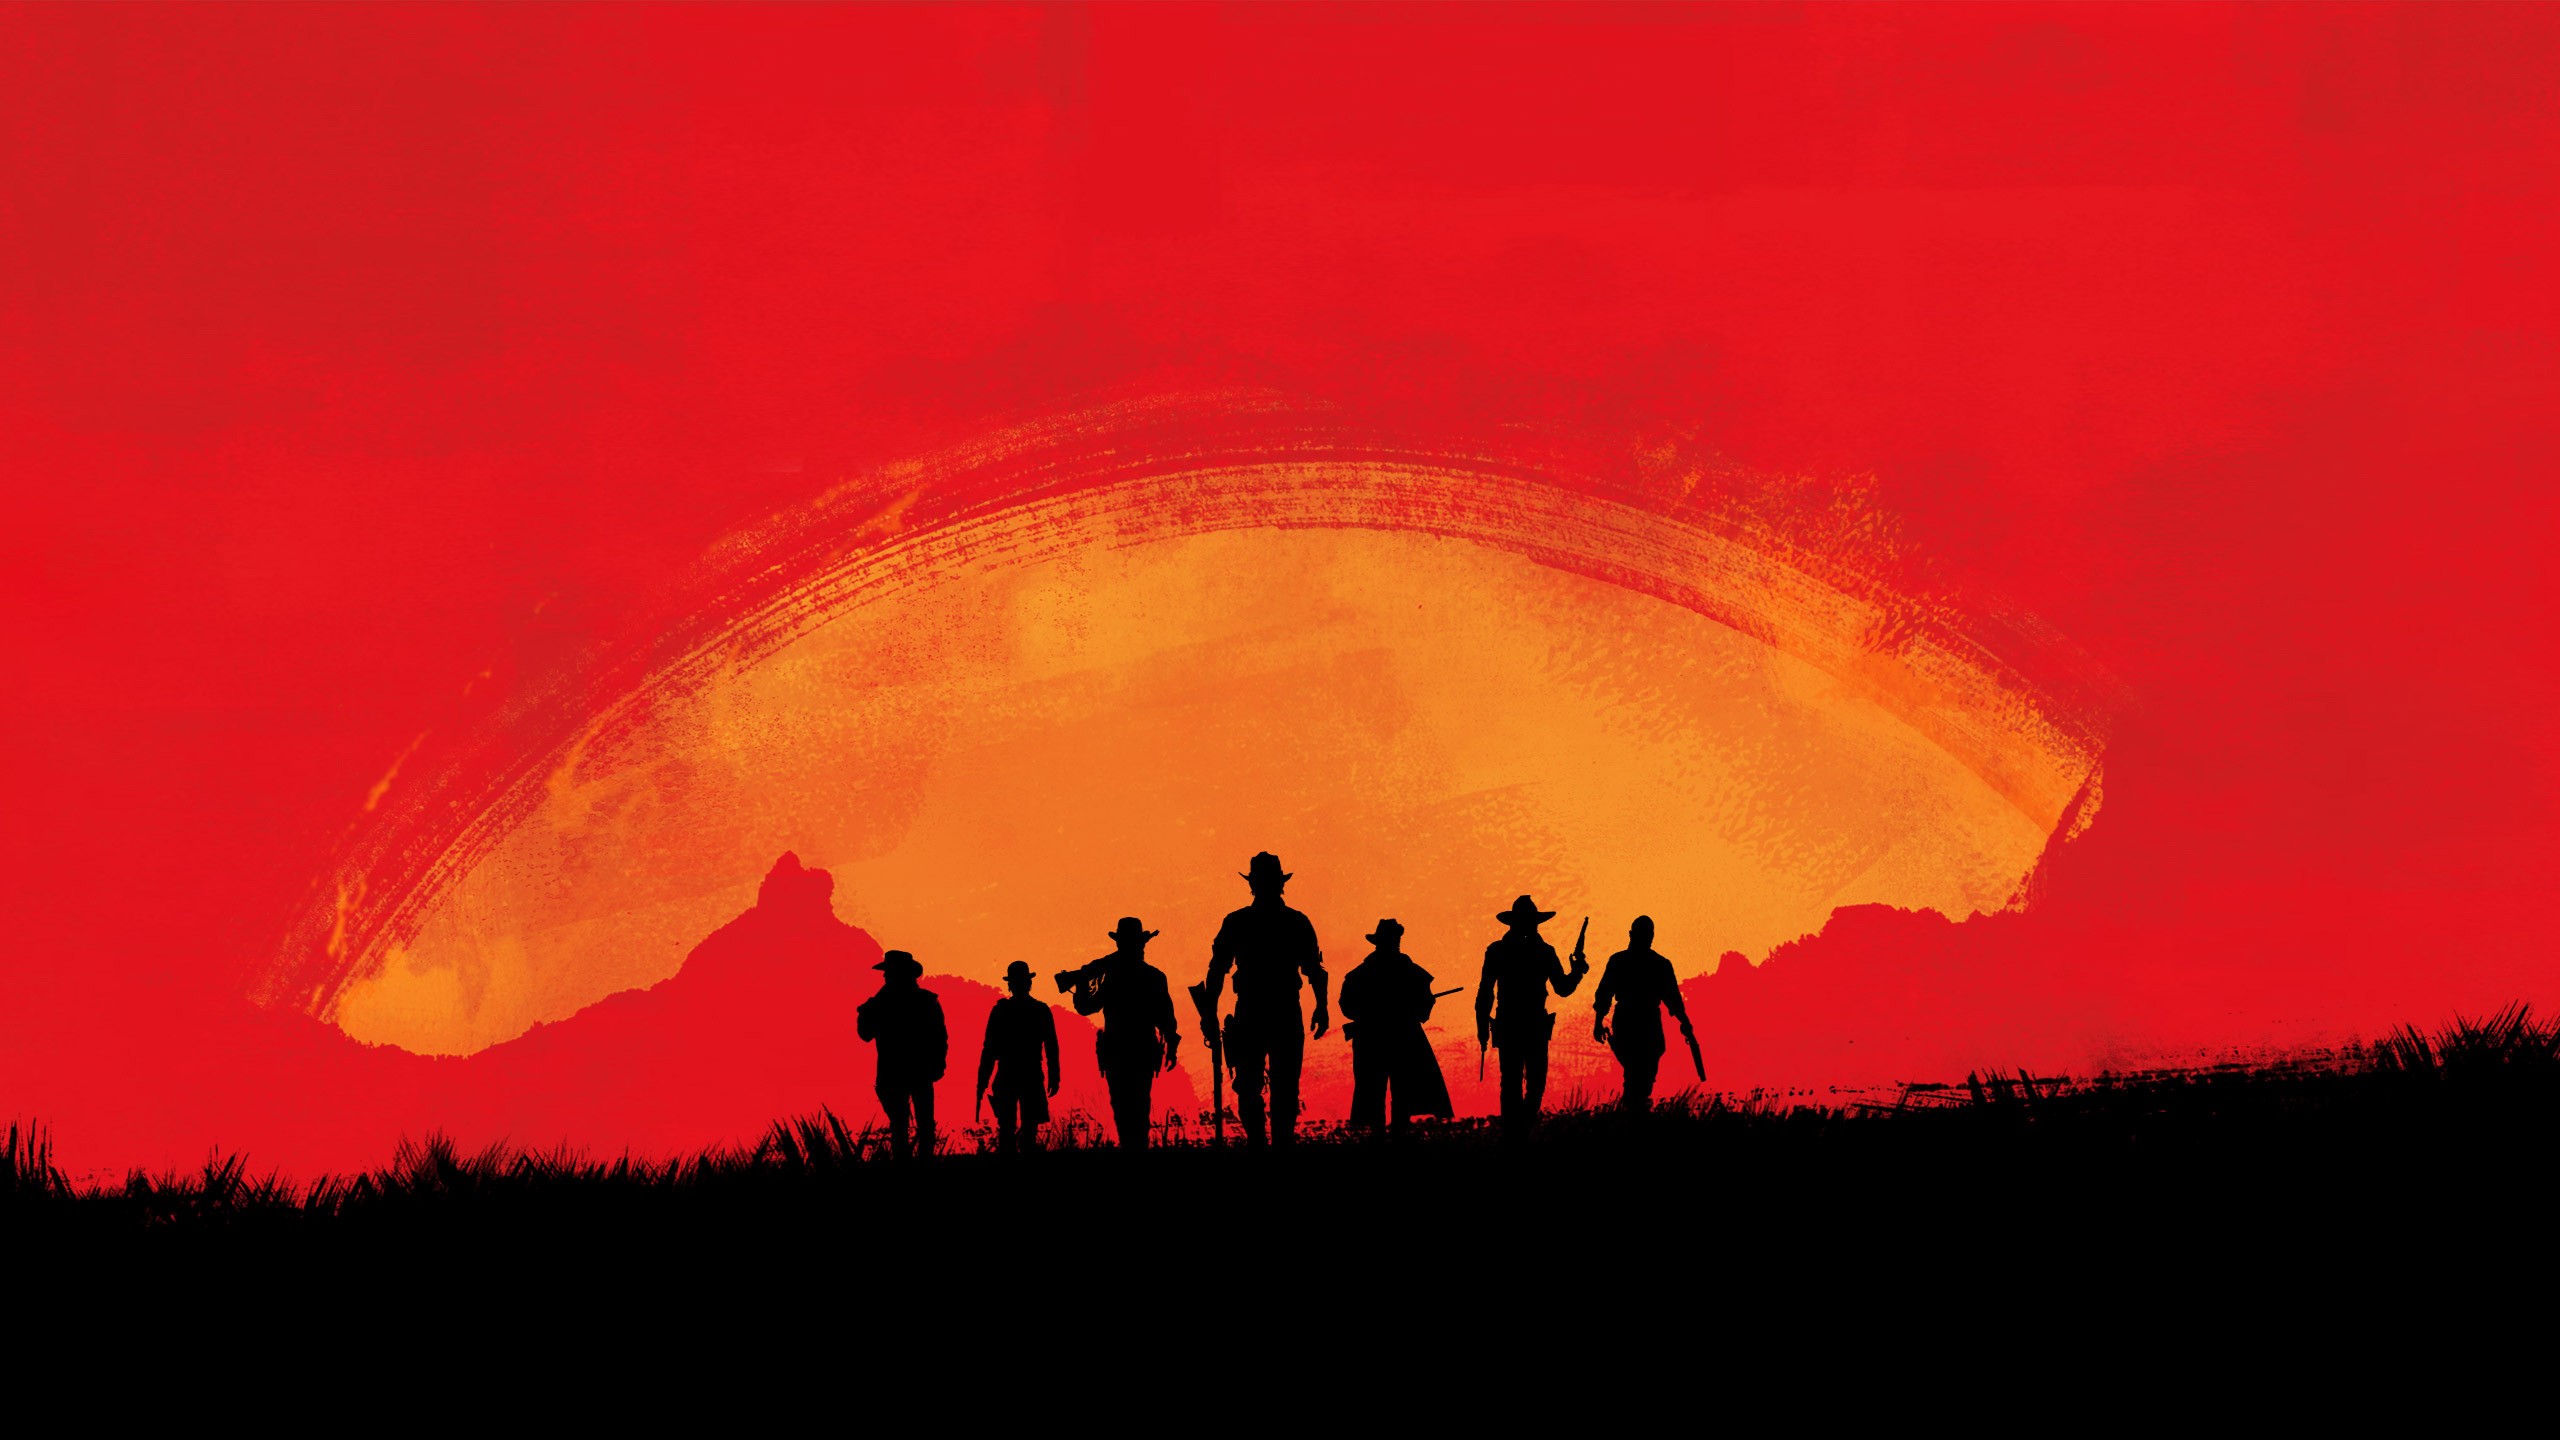 General 2560x1440 Red Dead Redemption 2 Rockstar Games video games western cowboys Red Dead Redemption